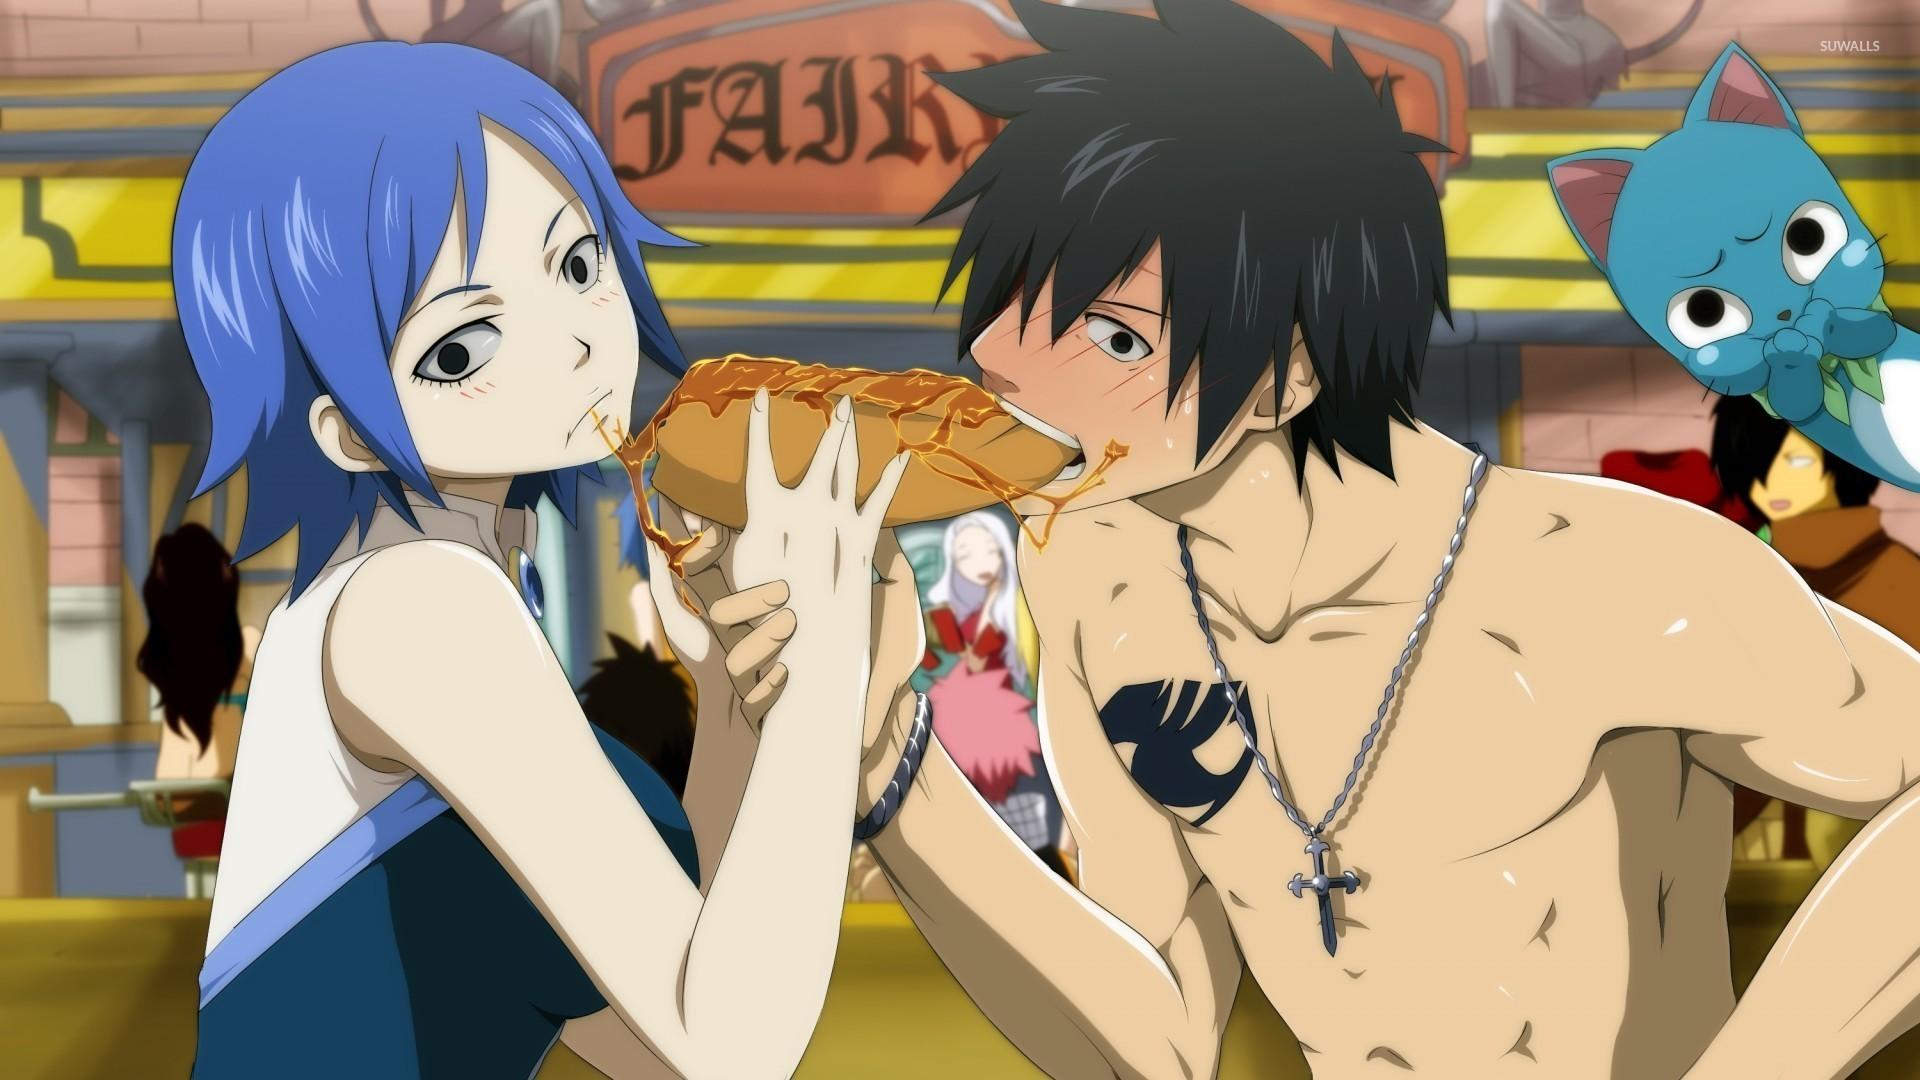 Gray and Juvia sharing a burger